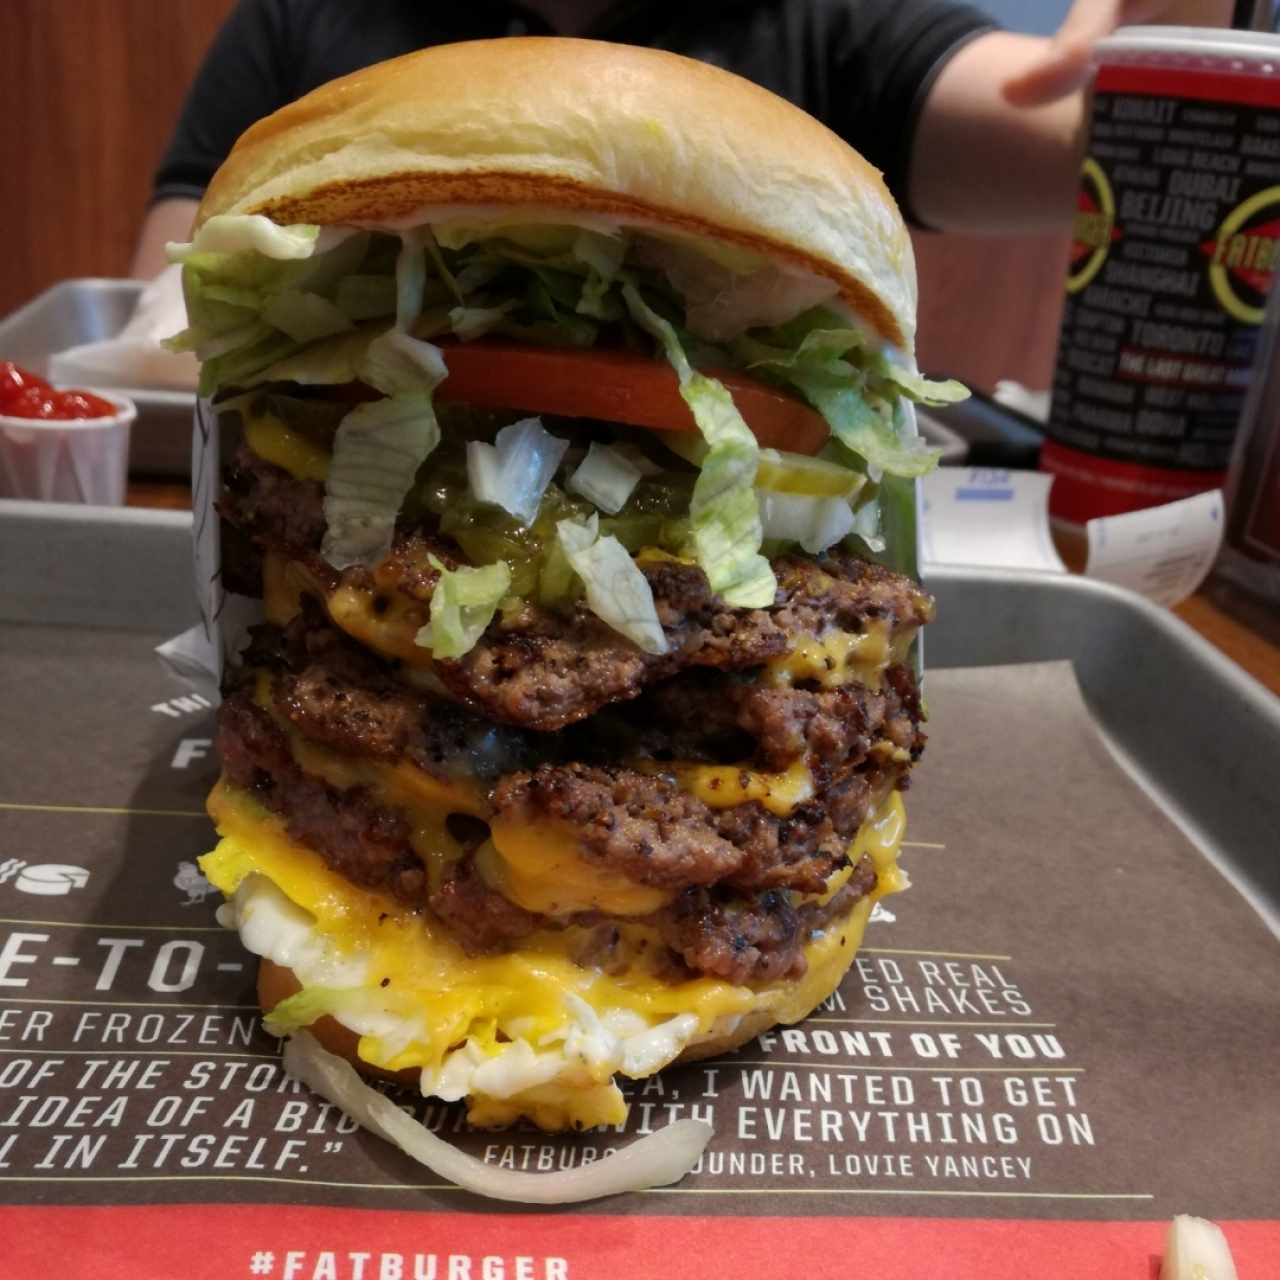 The Fatburger - Quad Burger